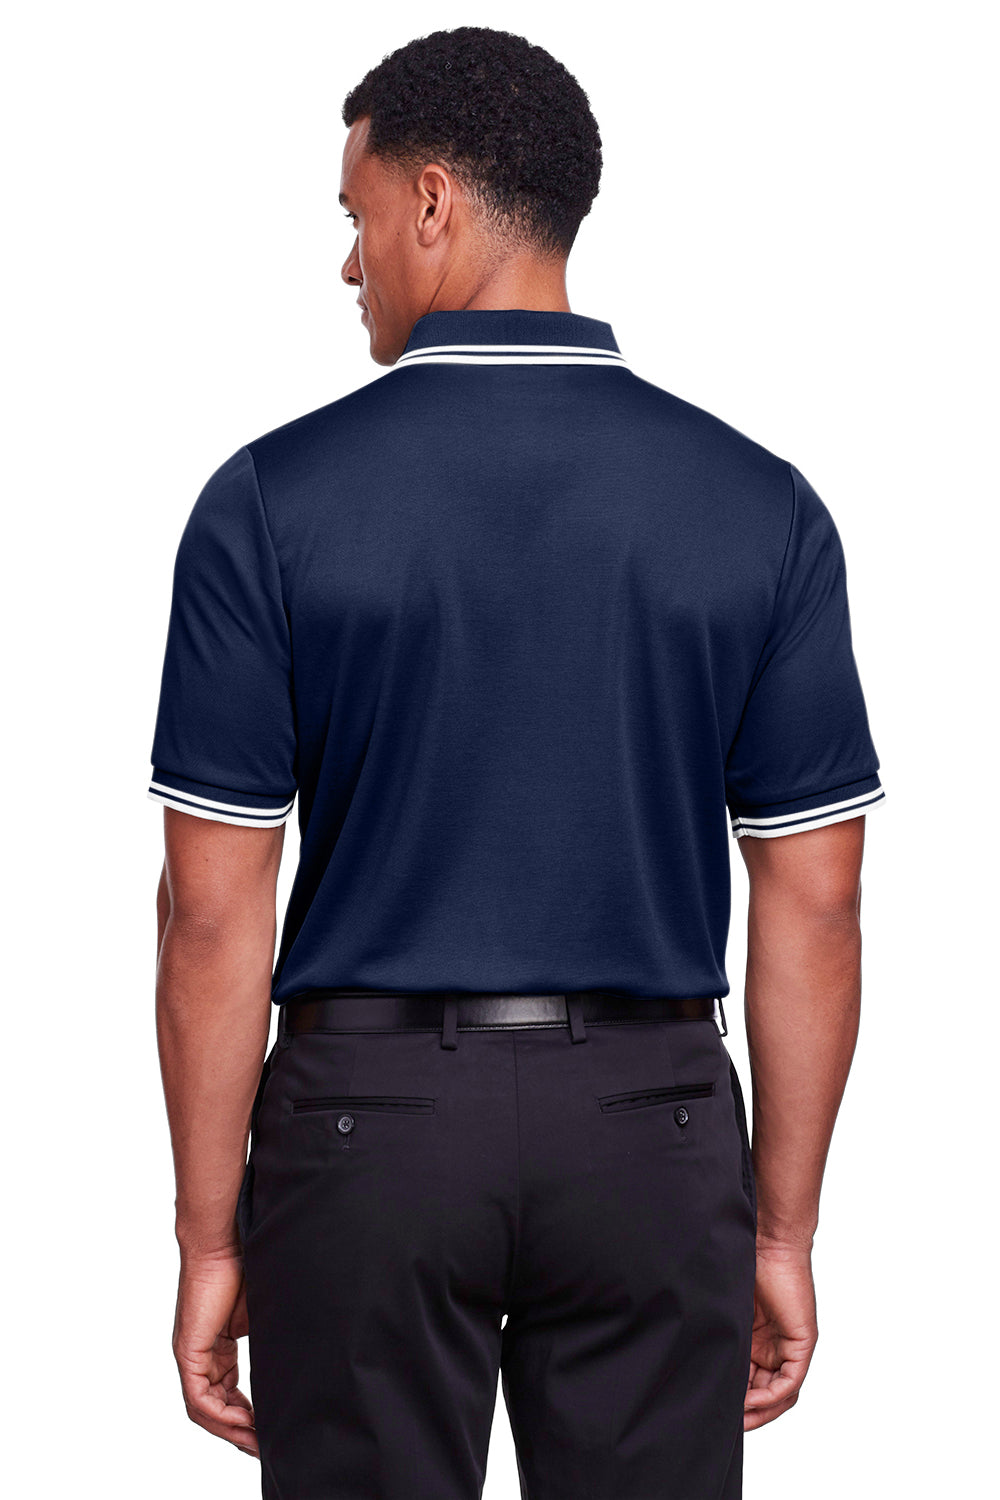 Devon & Jones DG20C Mens CrownLux Performance Moisture Wicking Short Sleeve Polo Shirt Navy Blue/White Back